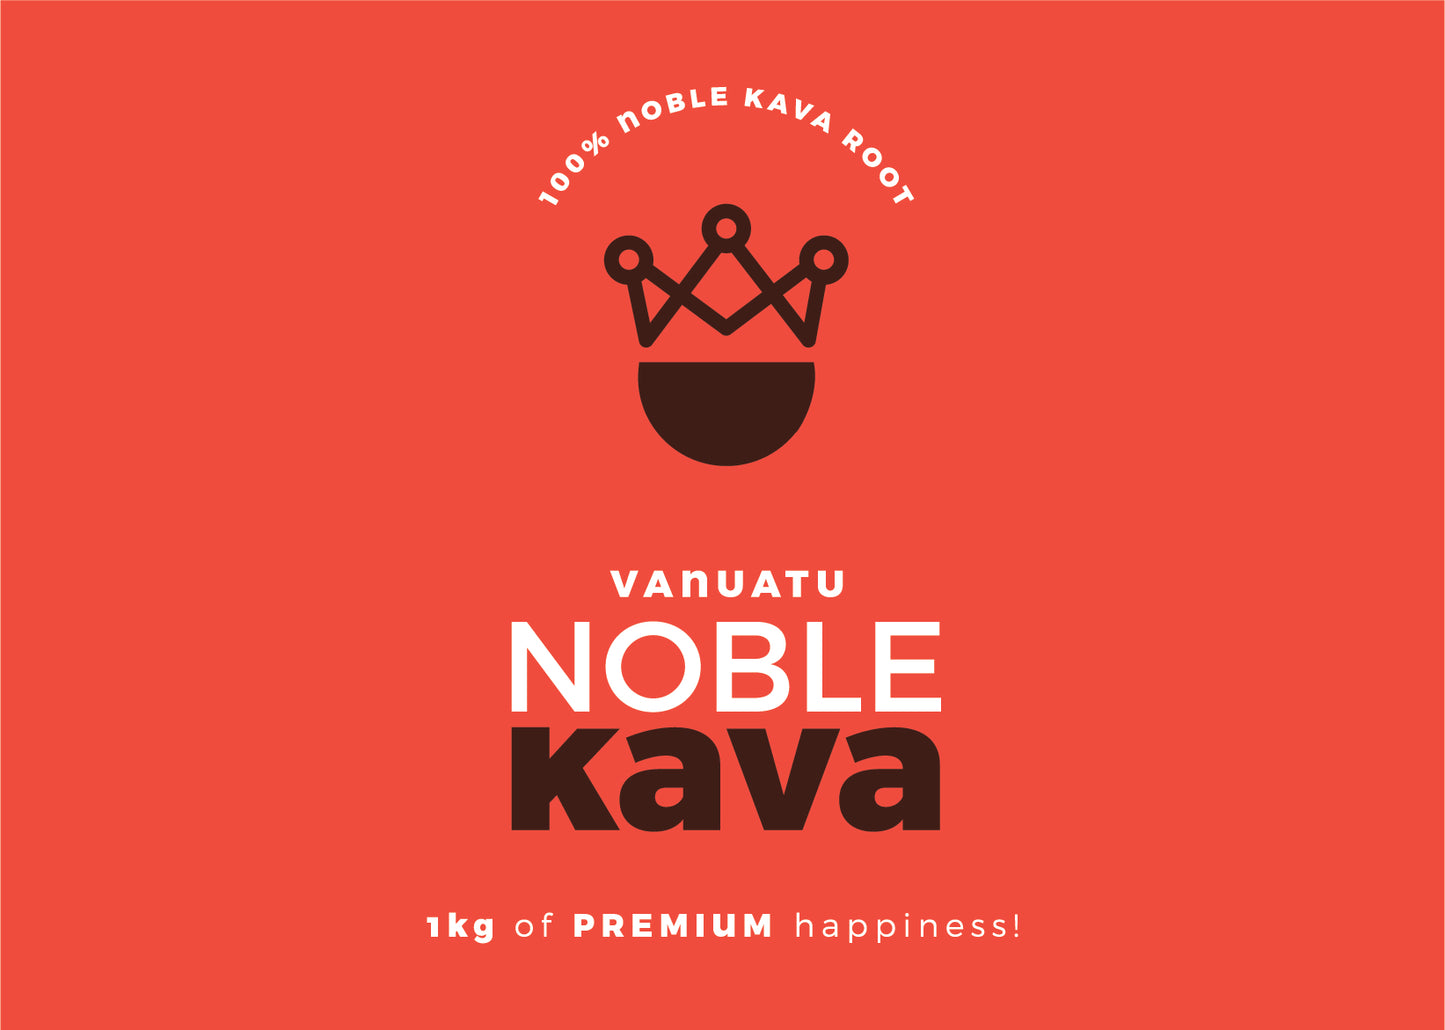 Vanuatu Noble Kava - Premium 5 Star 1kg